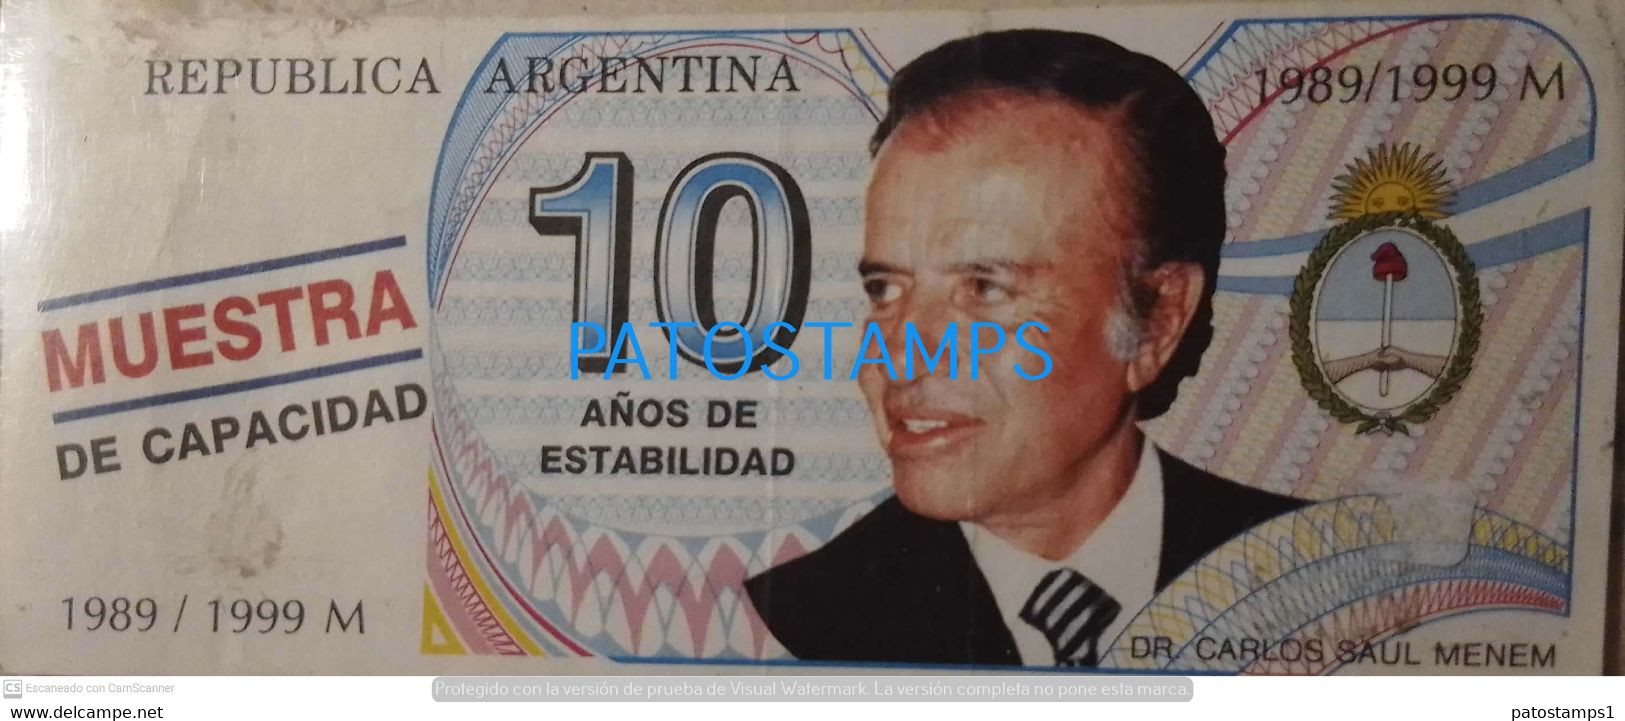 197798 ARGENTINA BILLETE FANTASY TICKET 10 POLITICA PRESIDENTE DR CARLOS MENEN 1989/ 1999  NO POSTCARD - Vrac - Billets